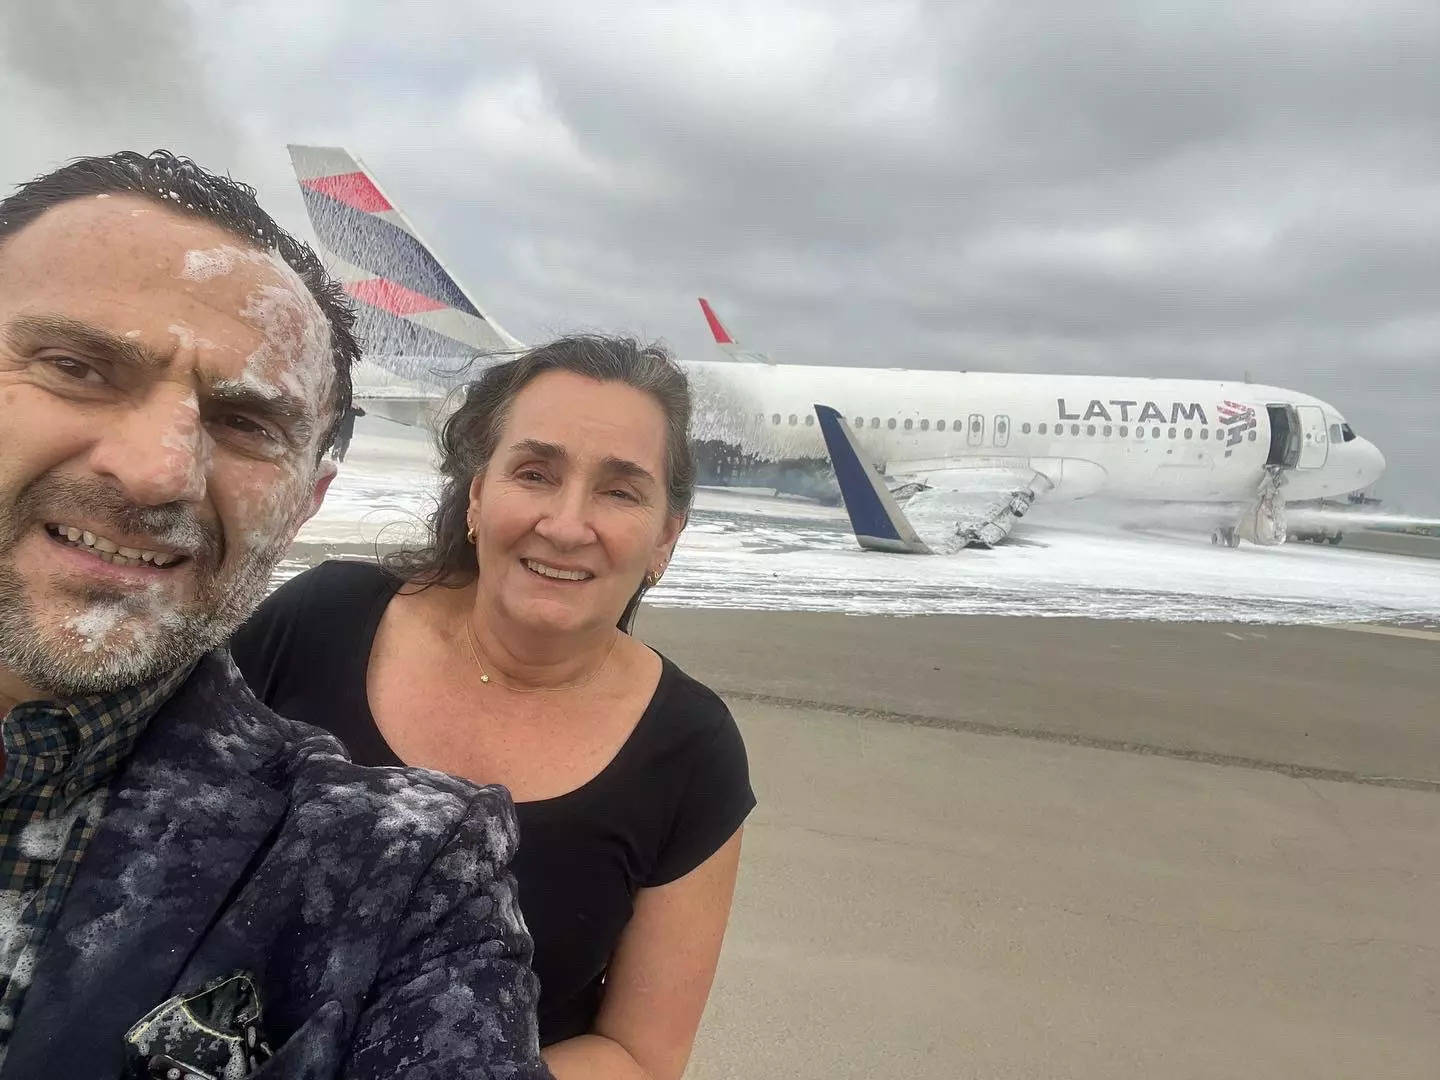 Couple takes selfie after surviving a plane crash.